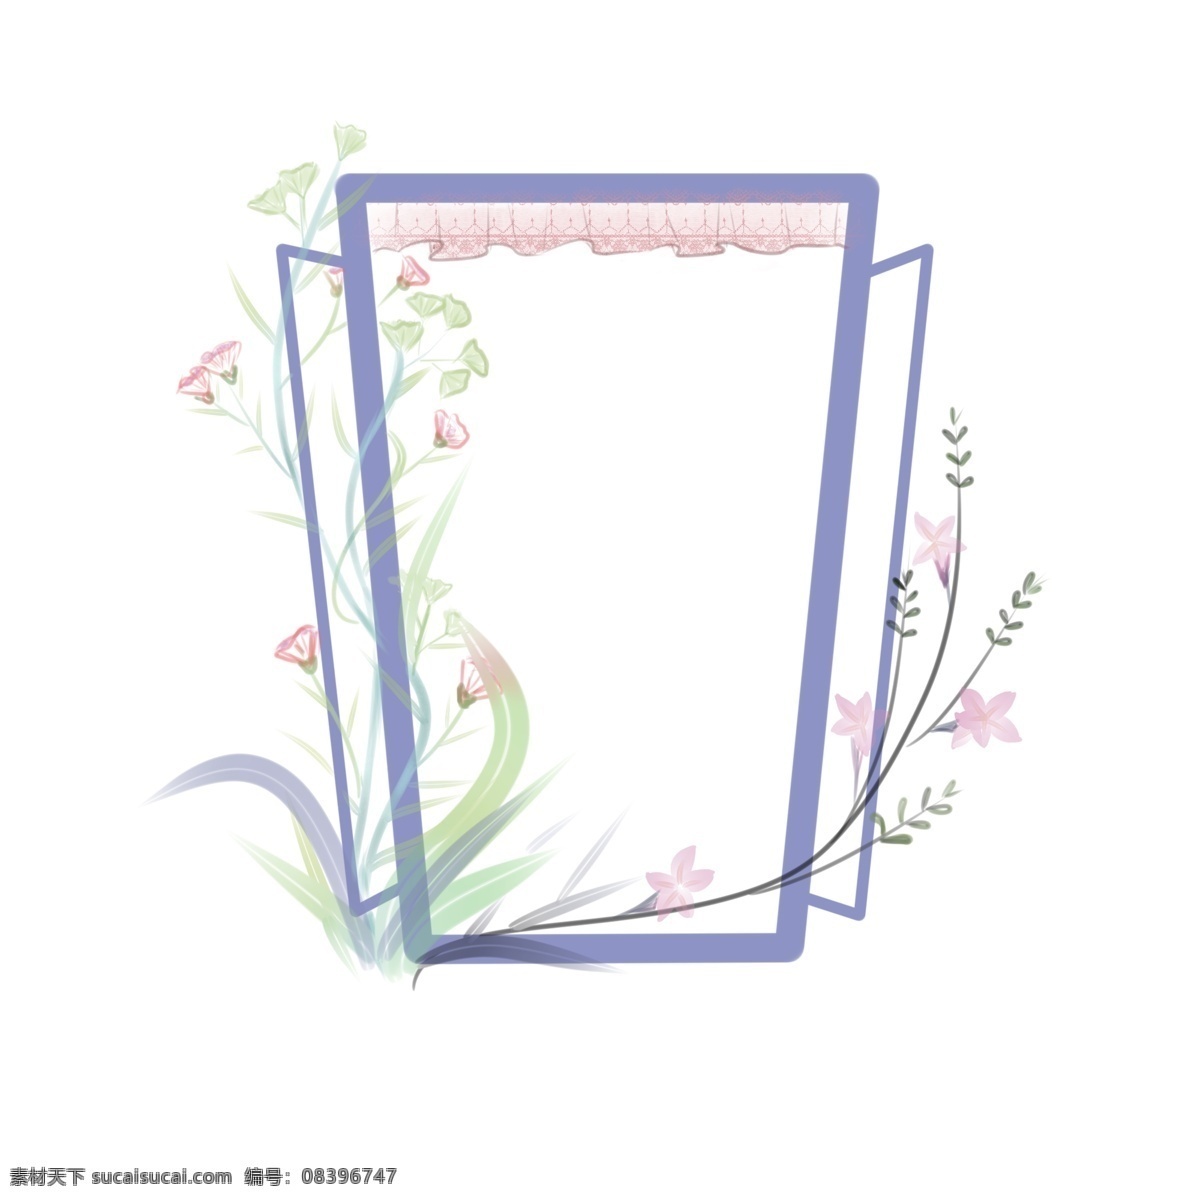 边框 窗户 清新 植物 花卉 手绘 免 抠 唯美 浪漫 元素 蓝色 紫色 绿色 小清新 免抠 窗口 马卡龙色